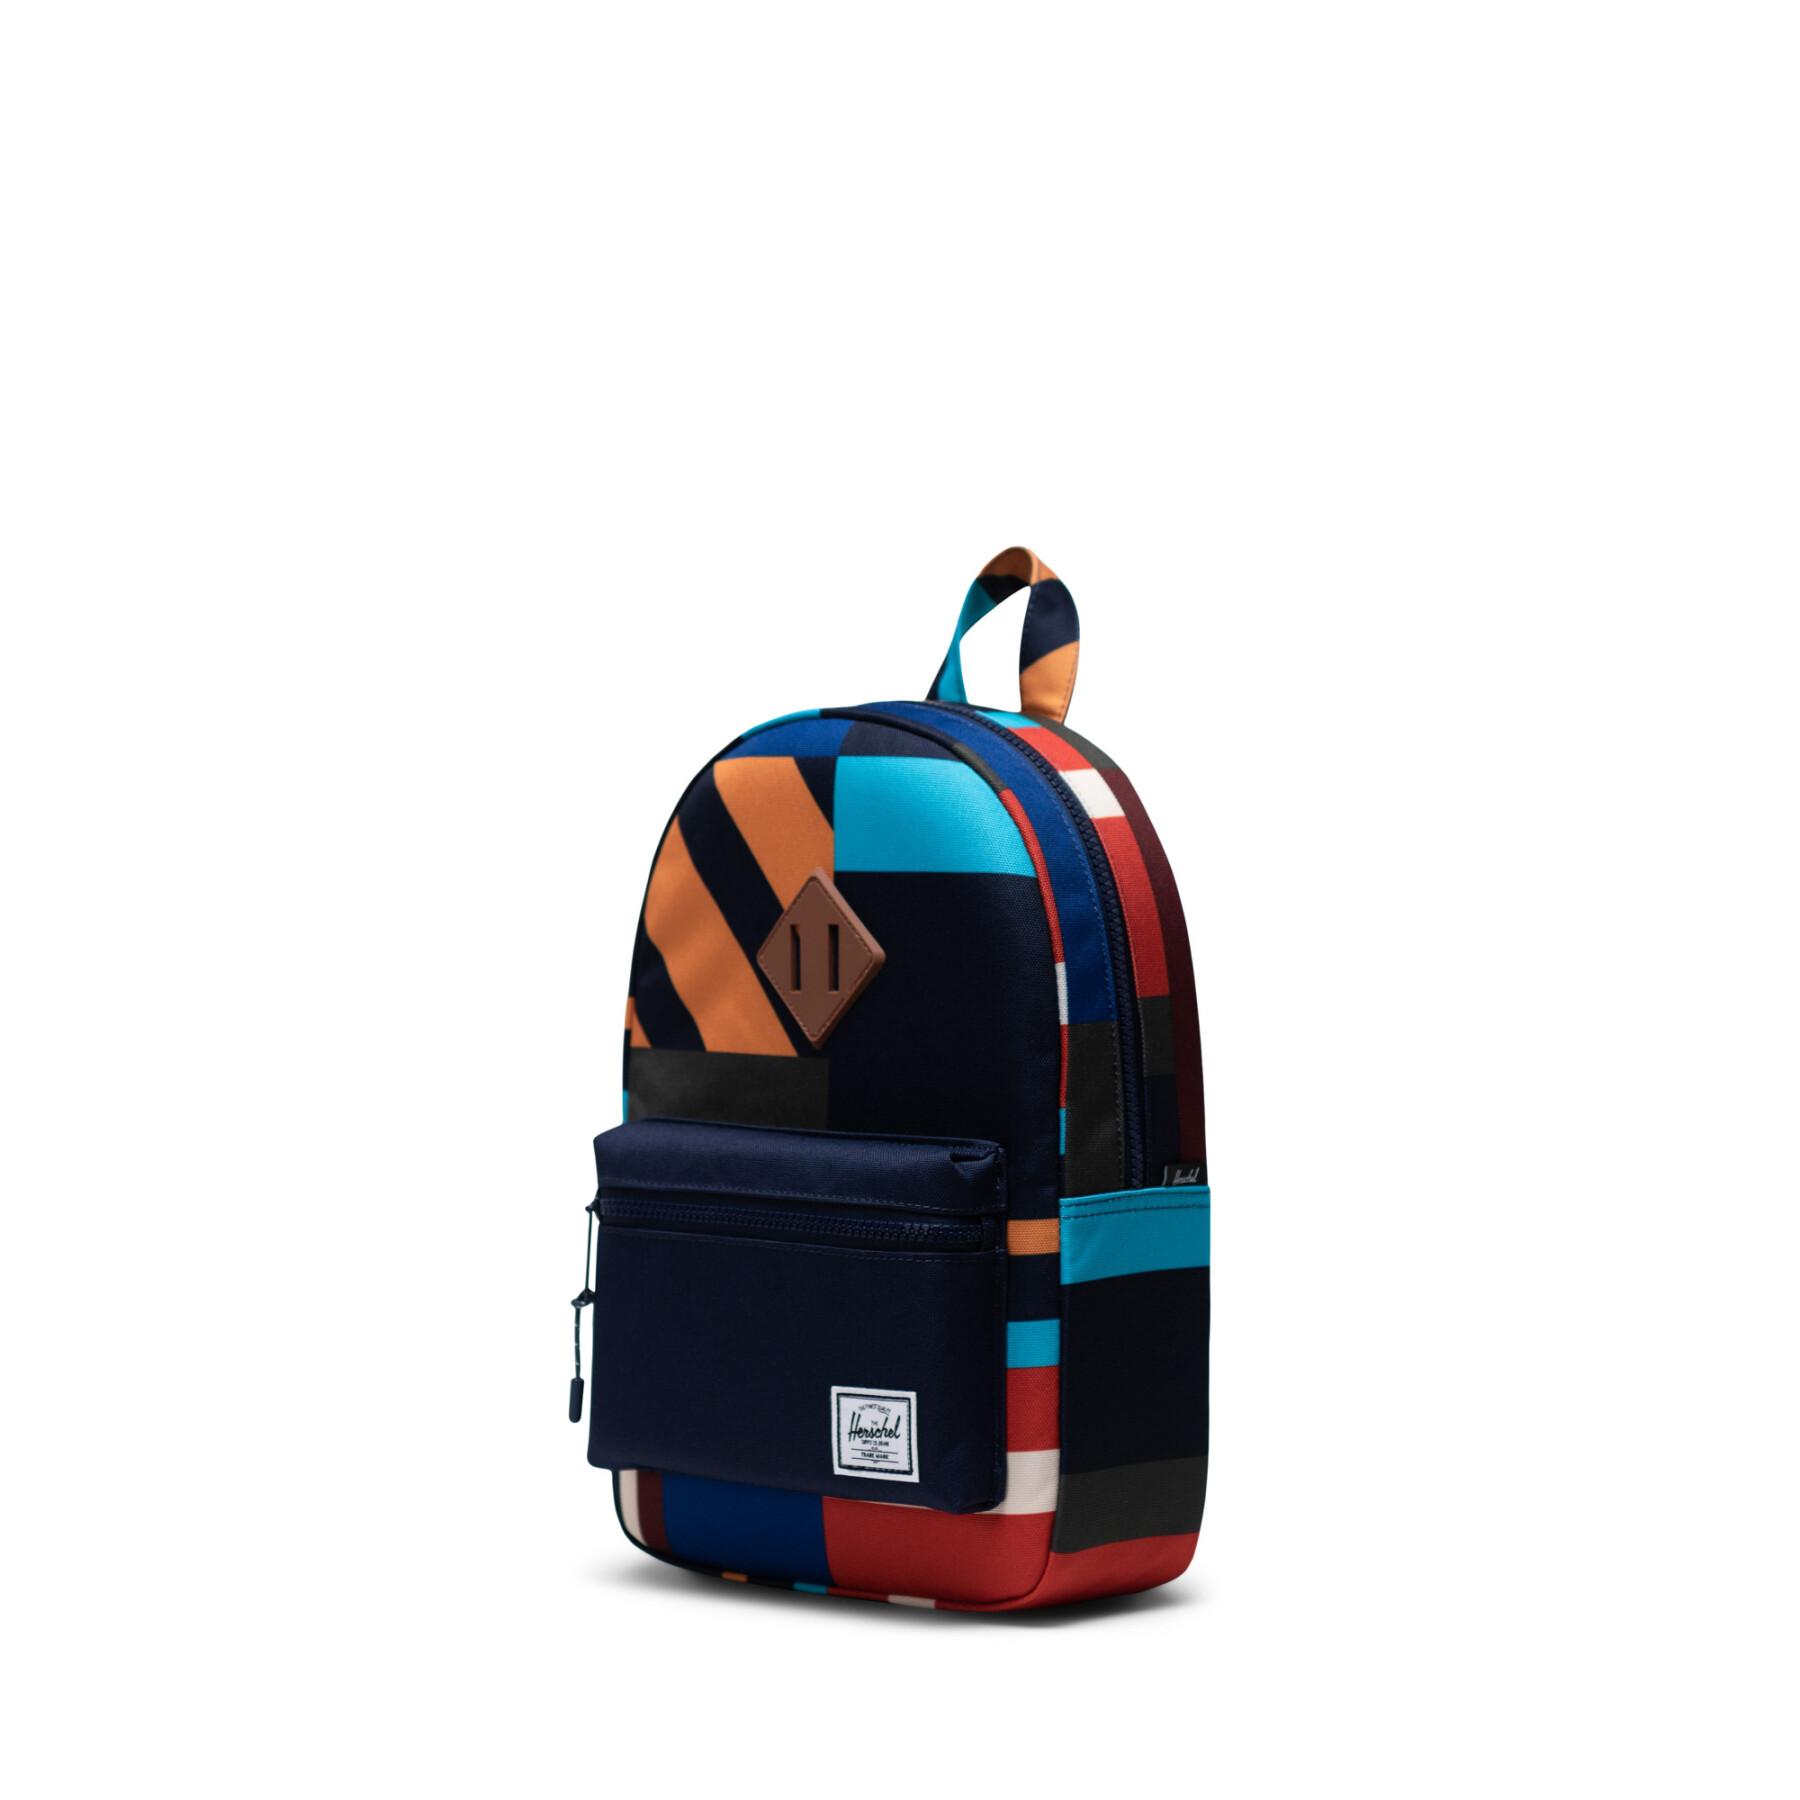 Children's backpack Herschel Heritage